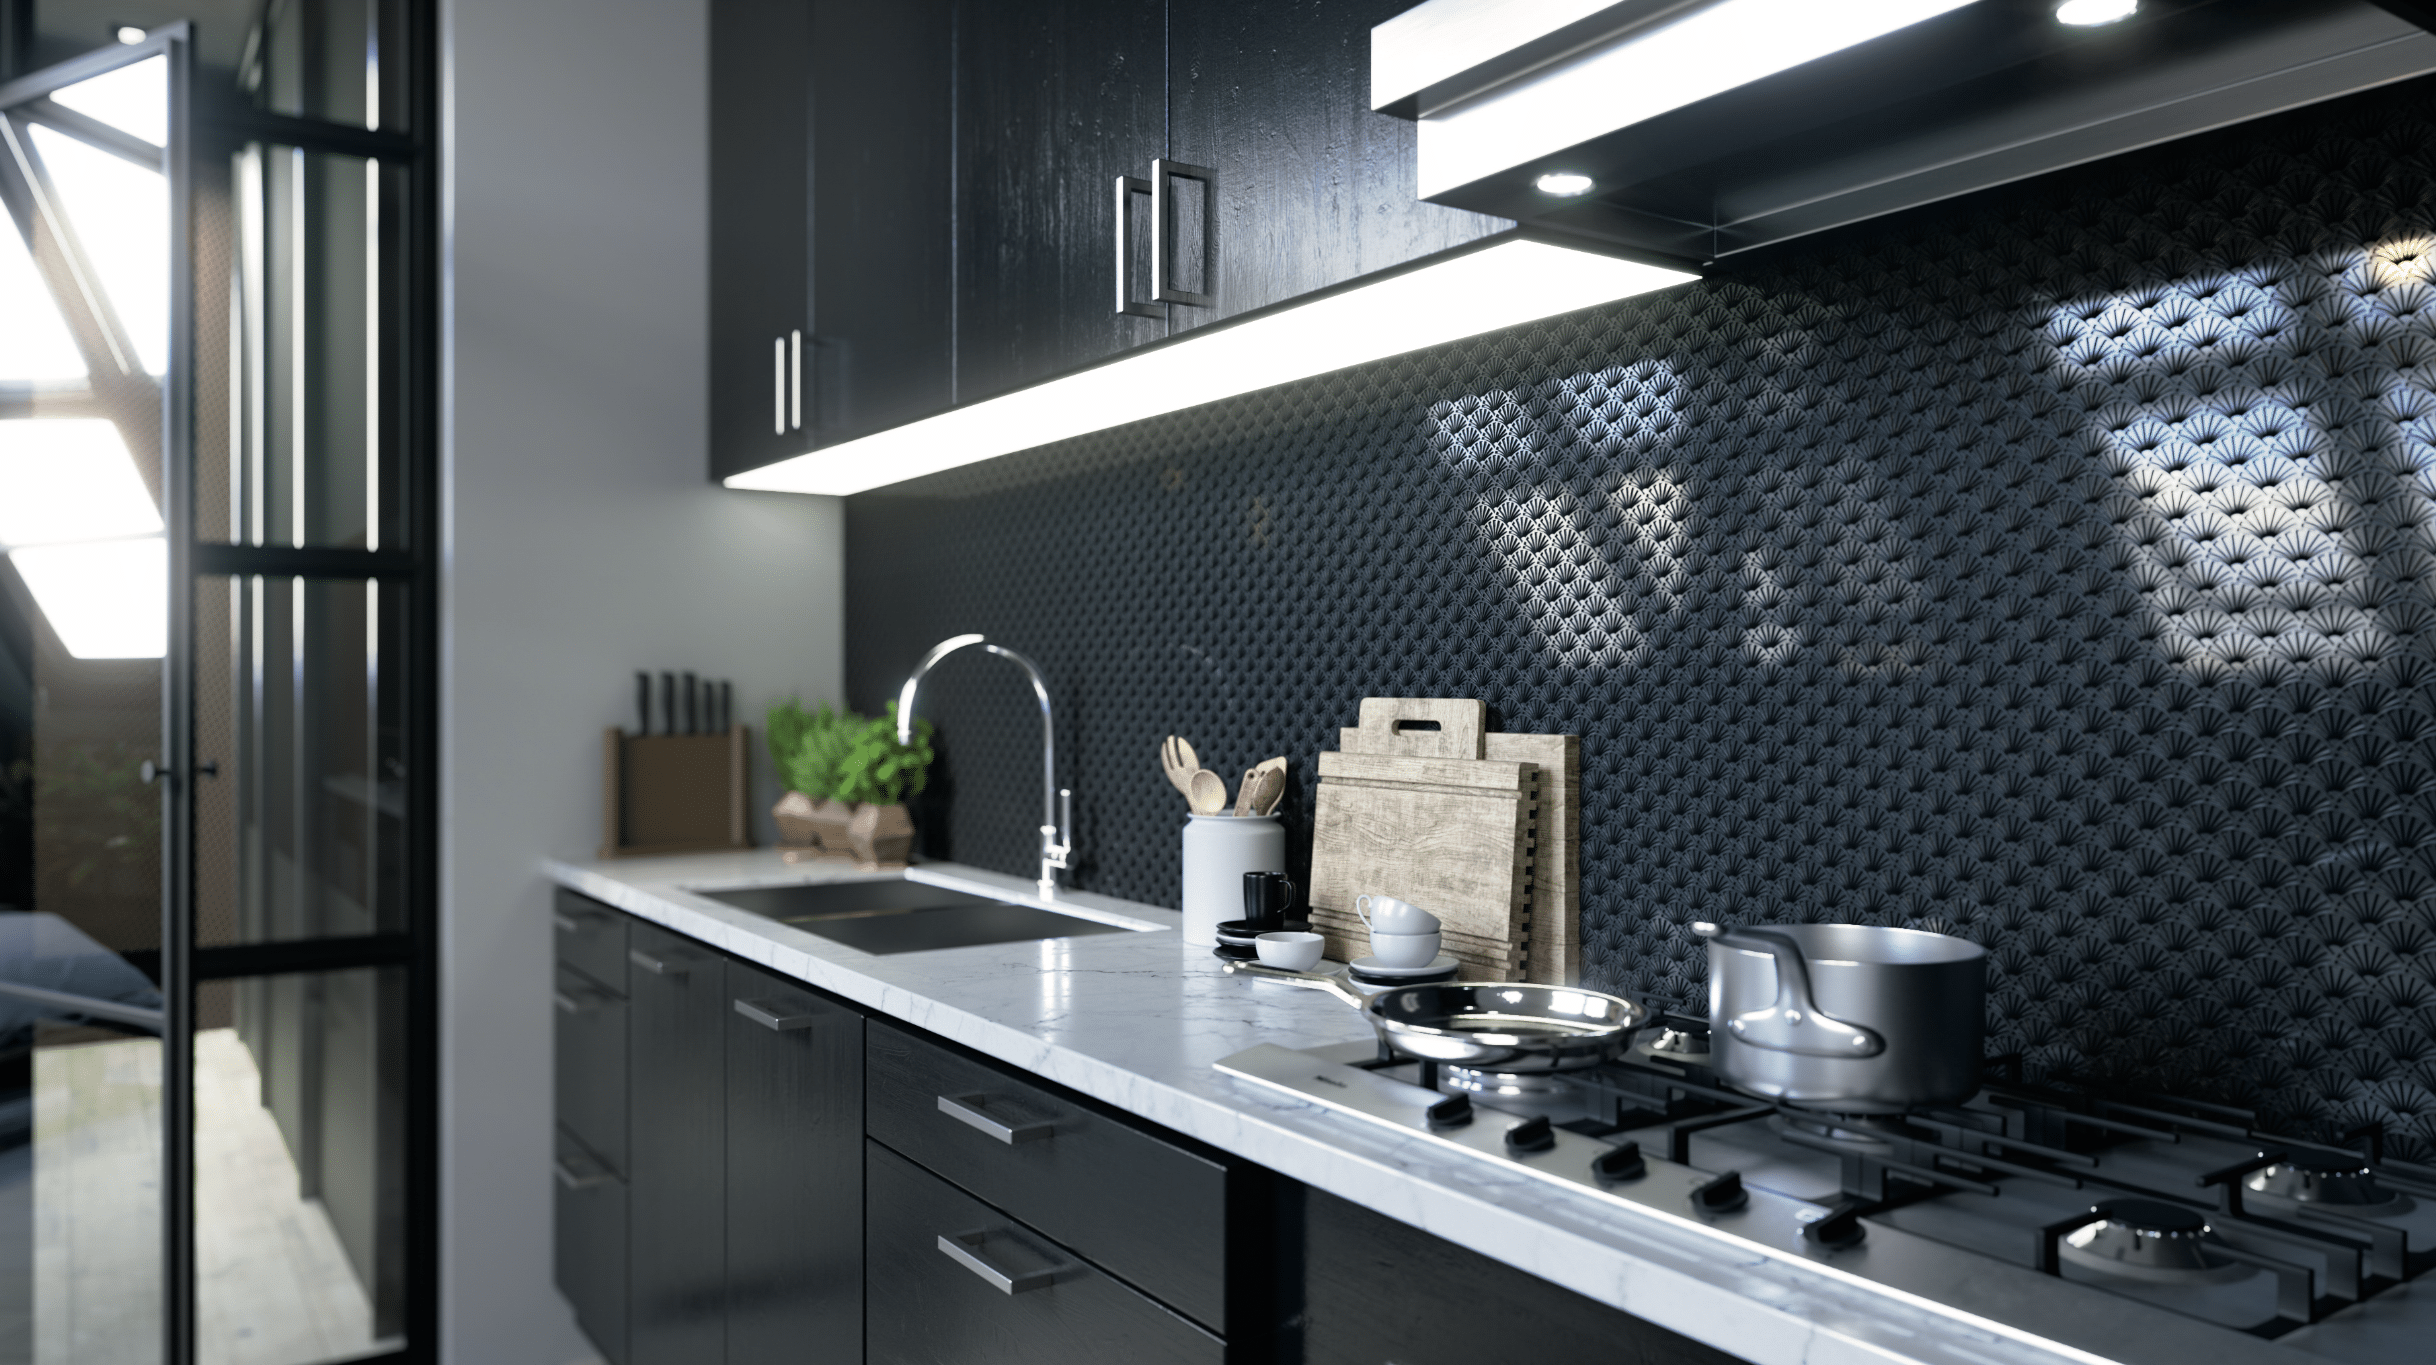 Keplinger zeigt eine Küche mit schwarzer Küchenzeile, marmorierter Arbeitsplatte und einer Rückwand mit Muster, dass durch Laserschnitt entstanden ist.